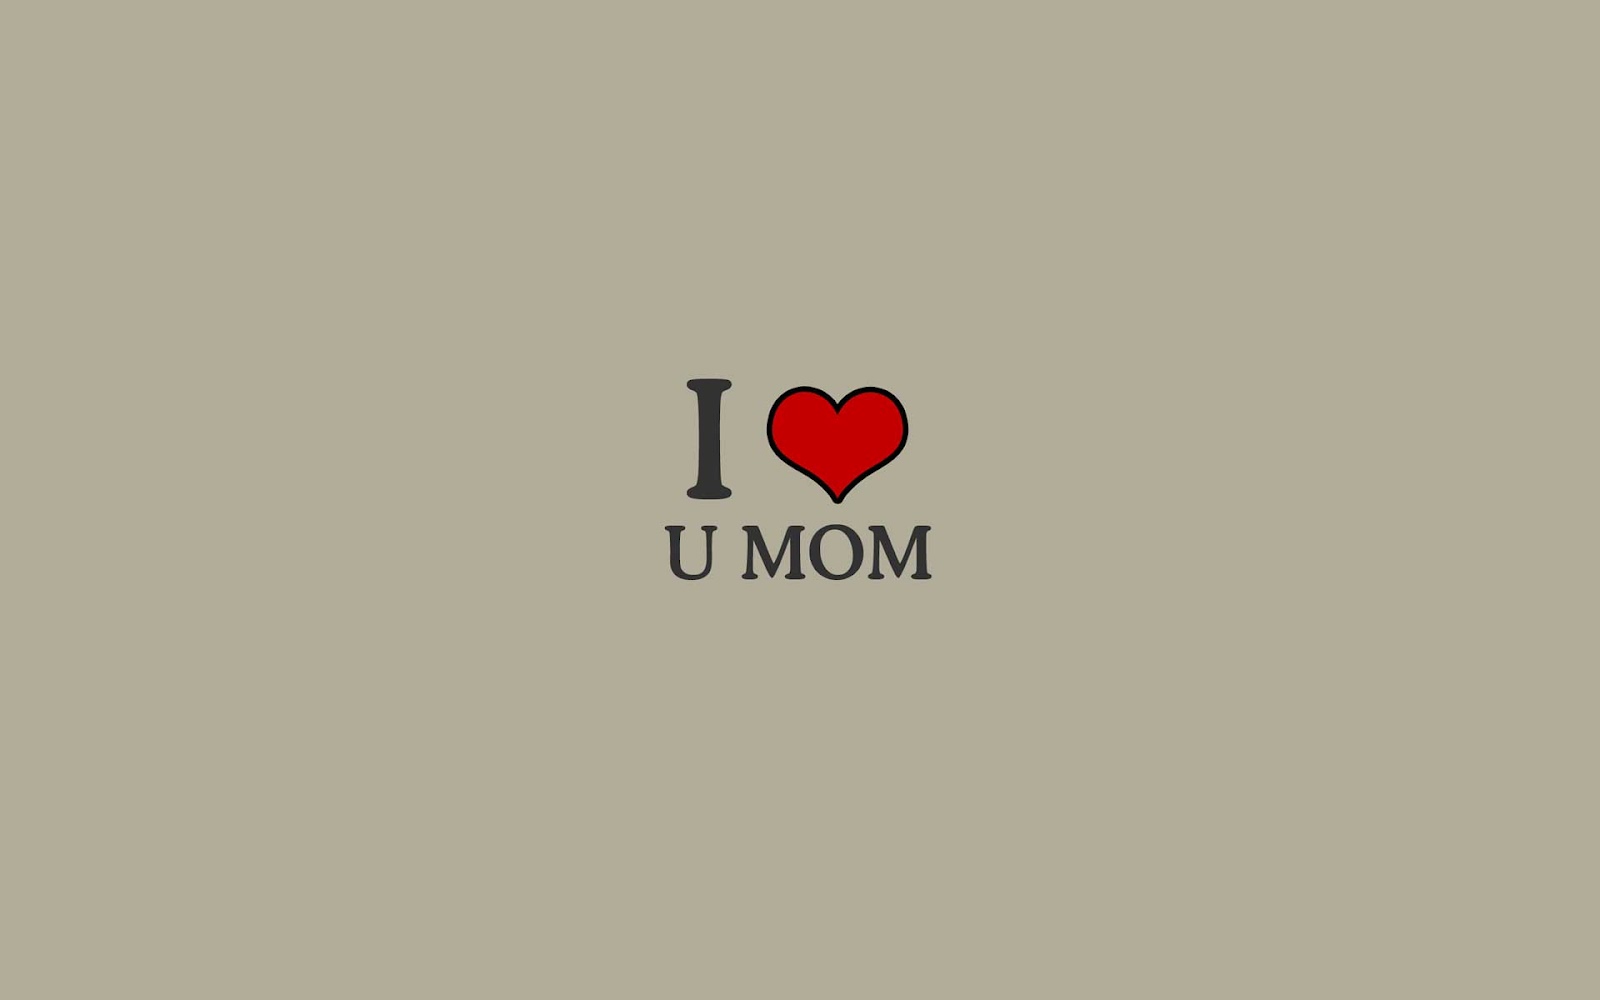 69+] I Love You Mom Wallpaper - WallpaperSafari